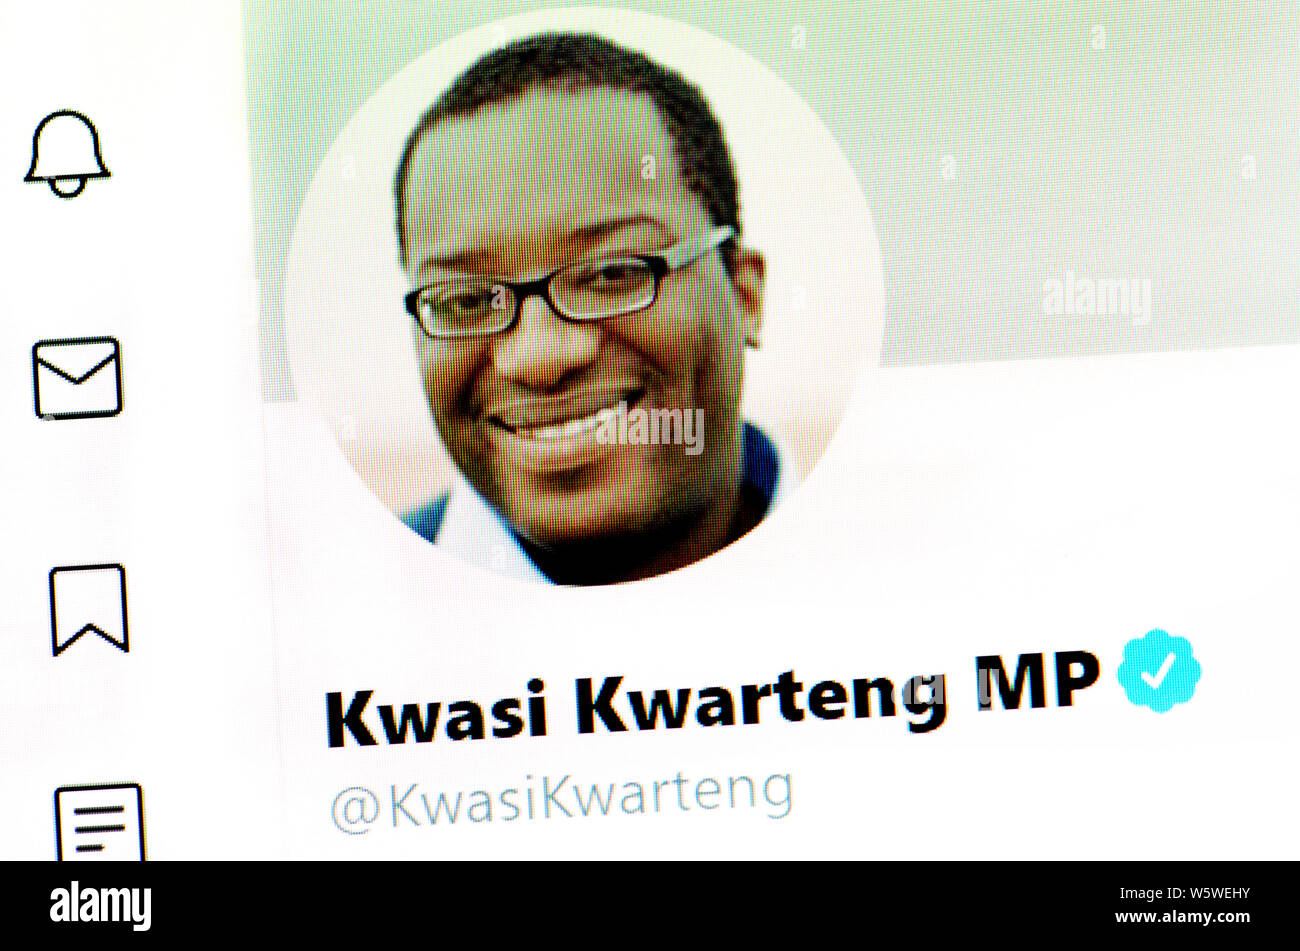 Pagina su Twitter (luglio 2019) - Kwasi Kwarteng - Il Ministro di Stato presso il Dipartimento per gli affari, strategia energetica e industriale Foto Stock